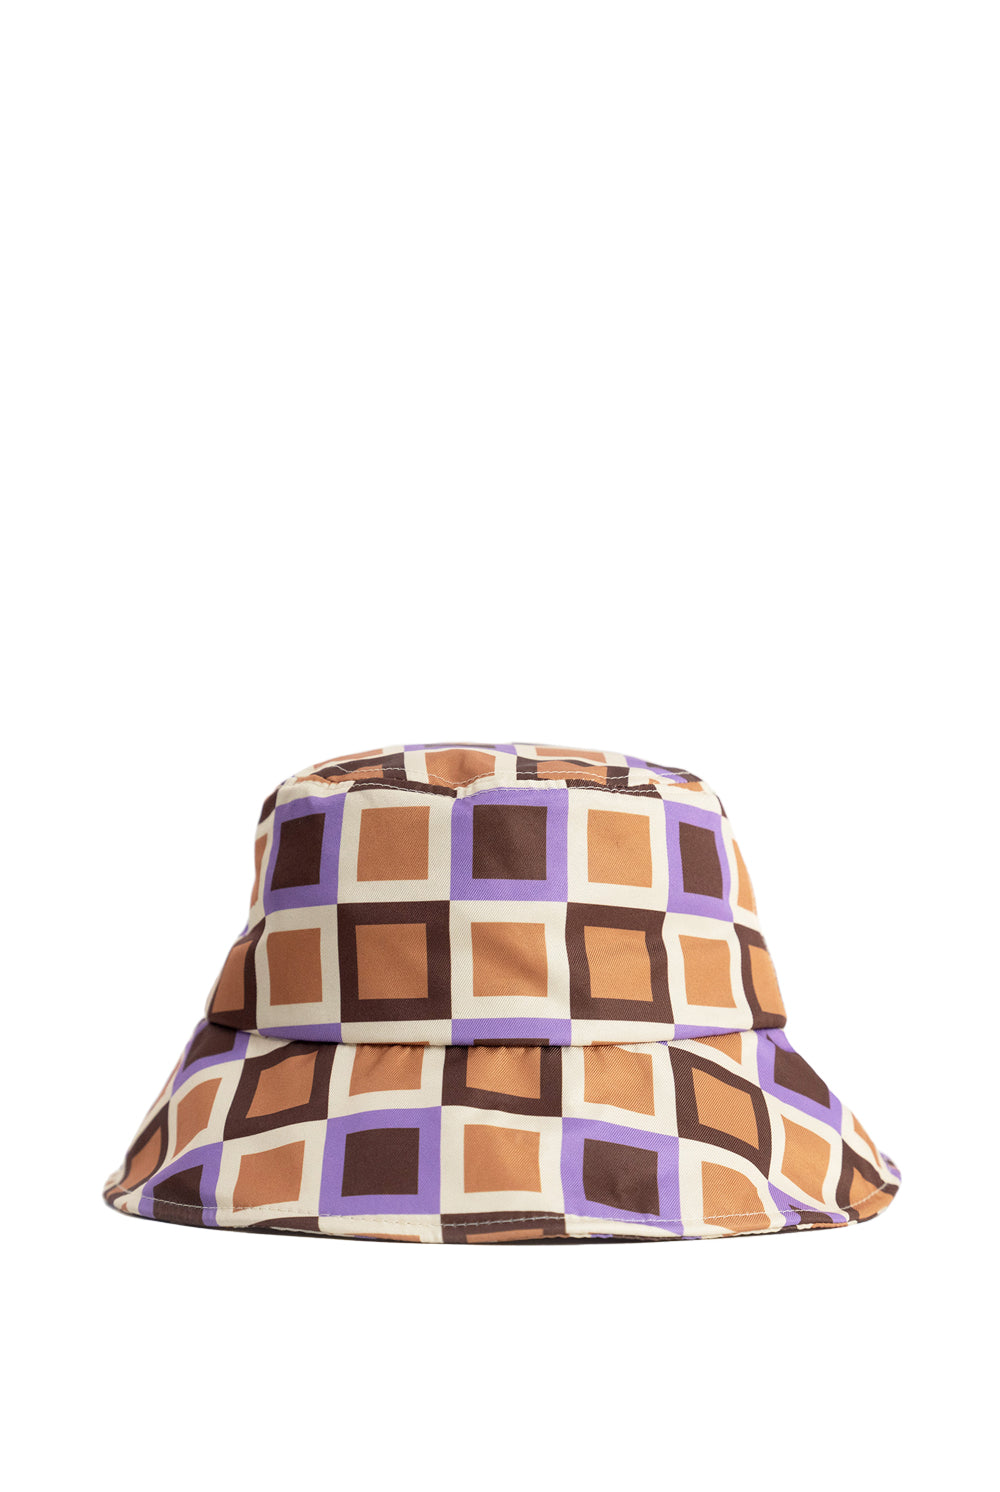 Geometric 70's Print Bucket Hat | Women's bucket hat | Multicoloured pattern hat | Festival Holiday Hat